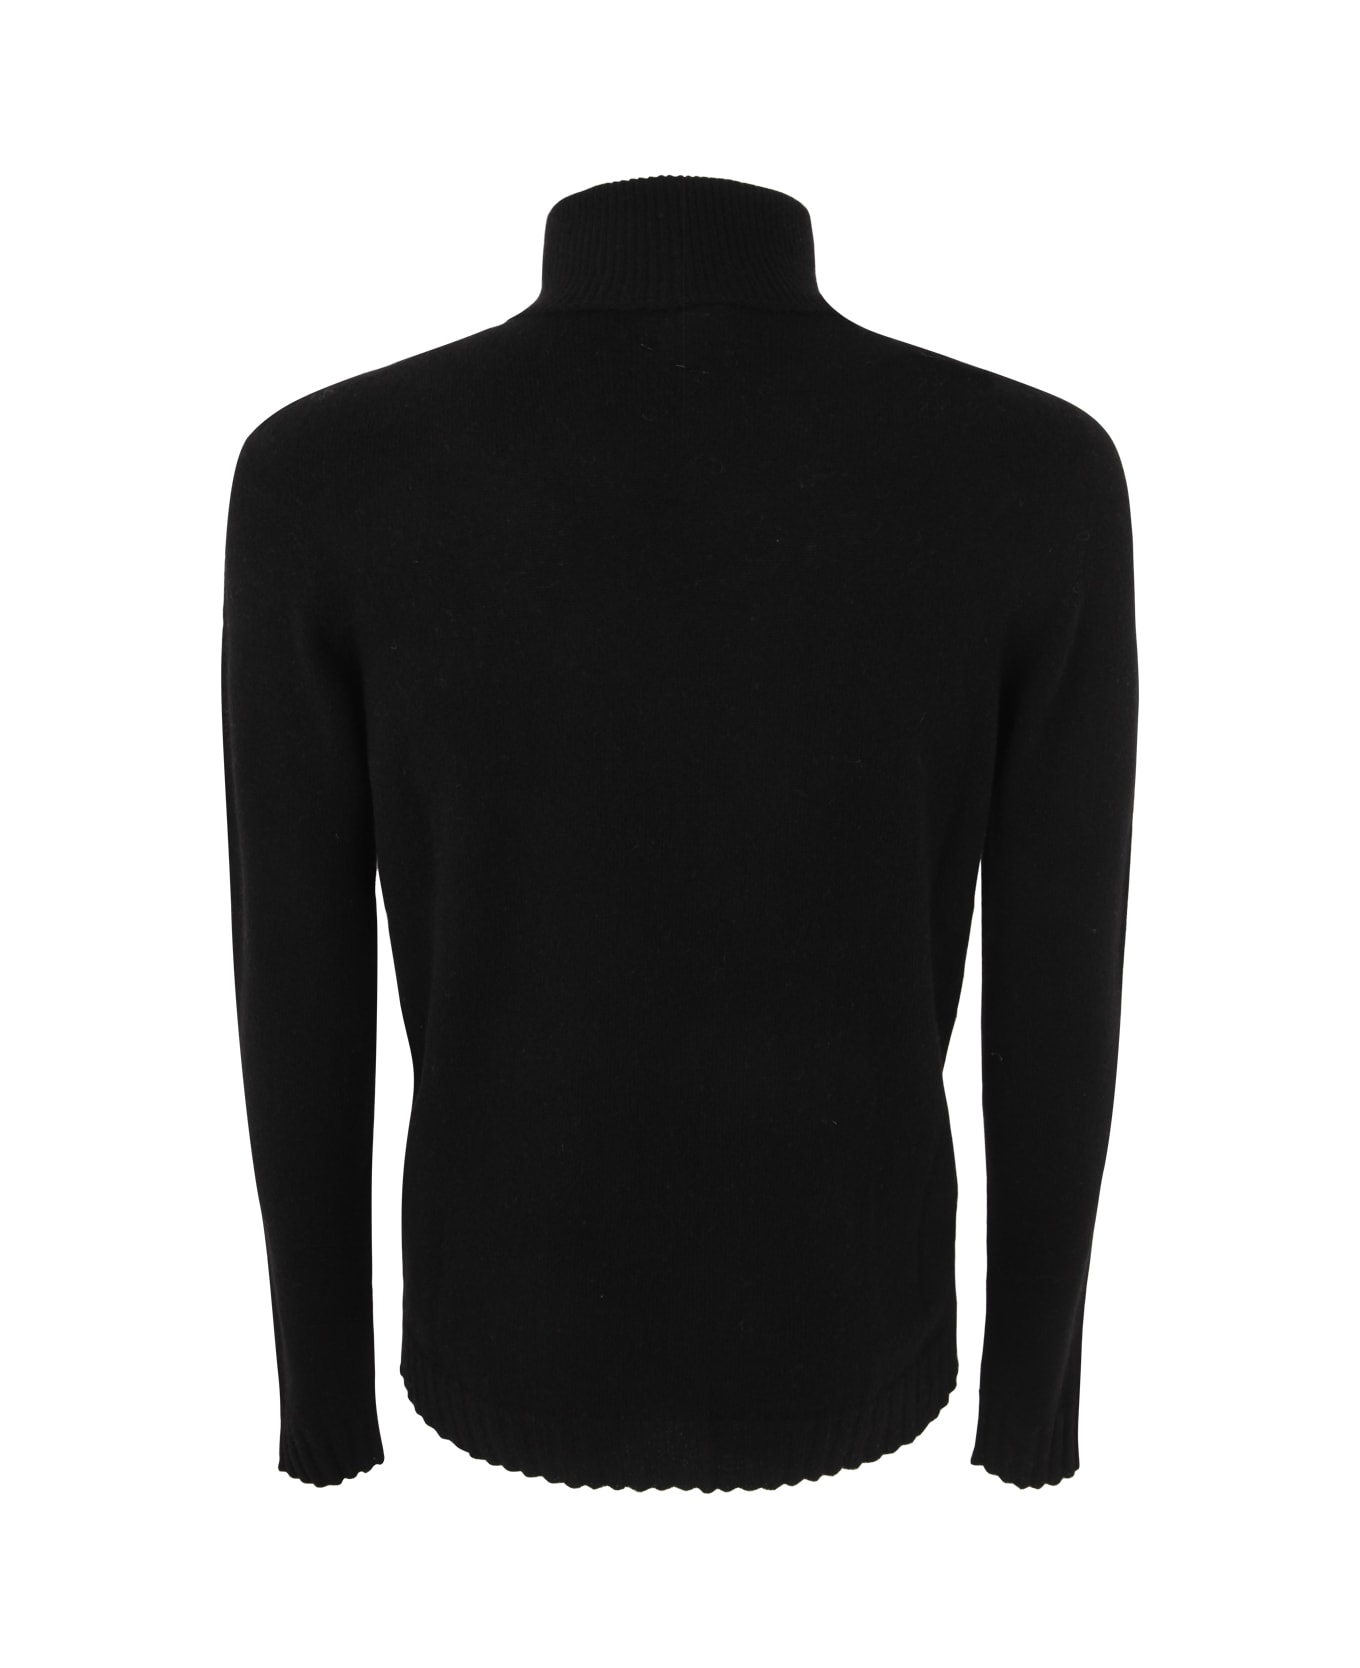 MD75 Cashmere Turtle Neck Sweater - Black ニットウェア